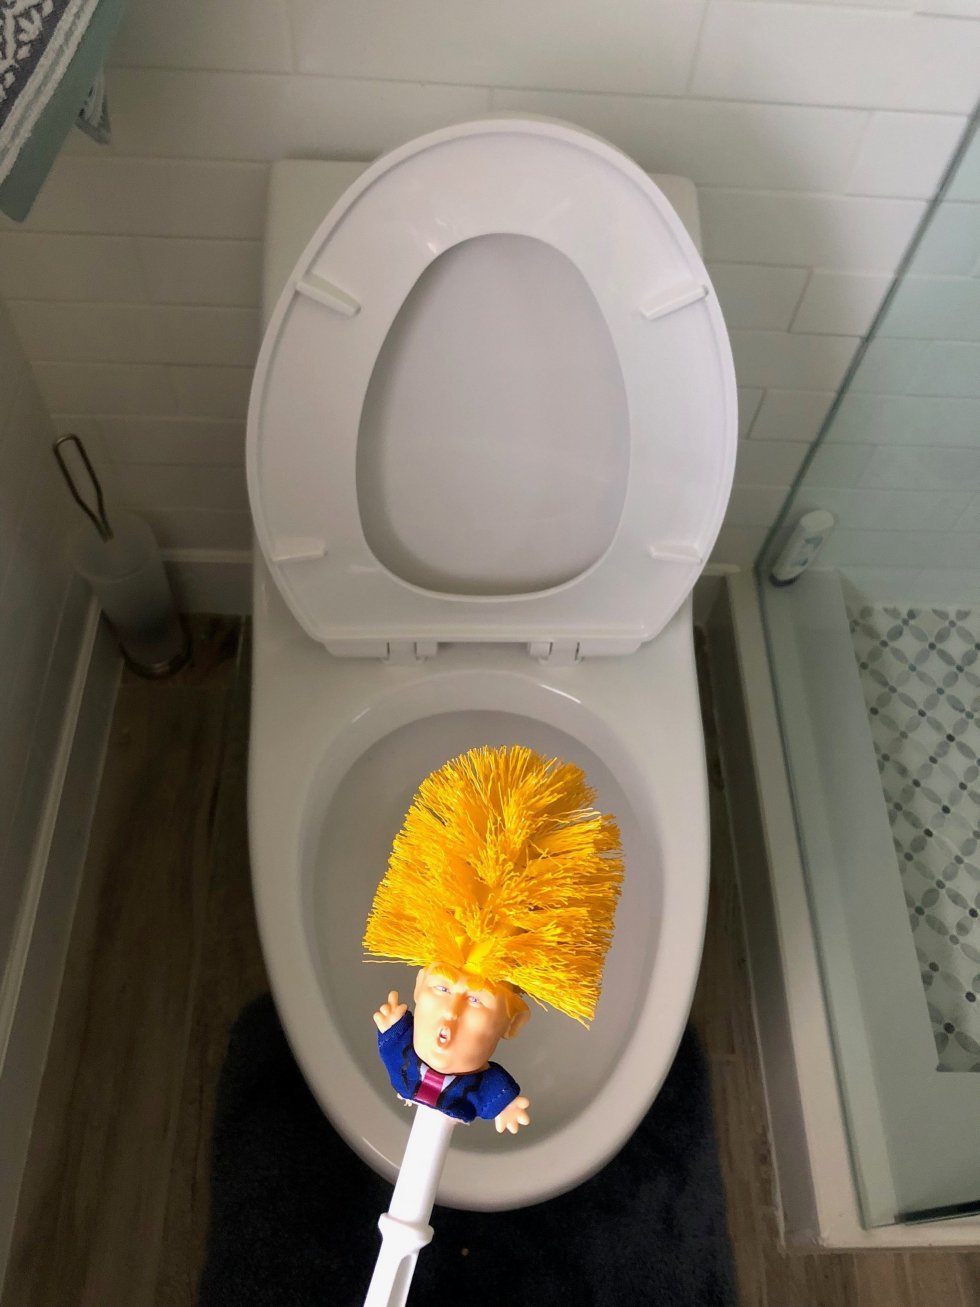 Nu kan du få en toiletbørste designet efter Donald Trump